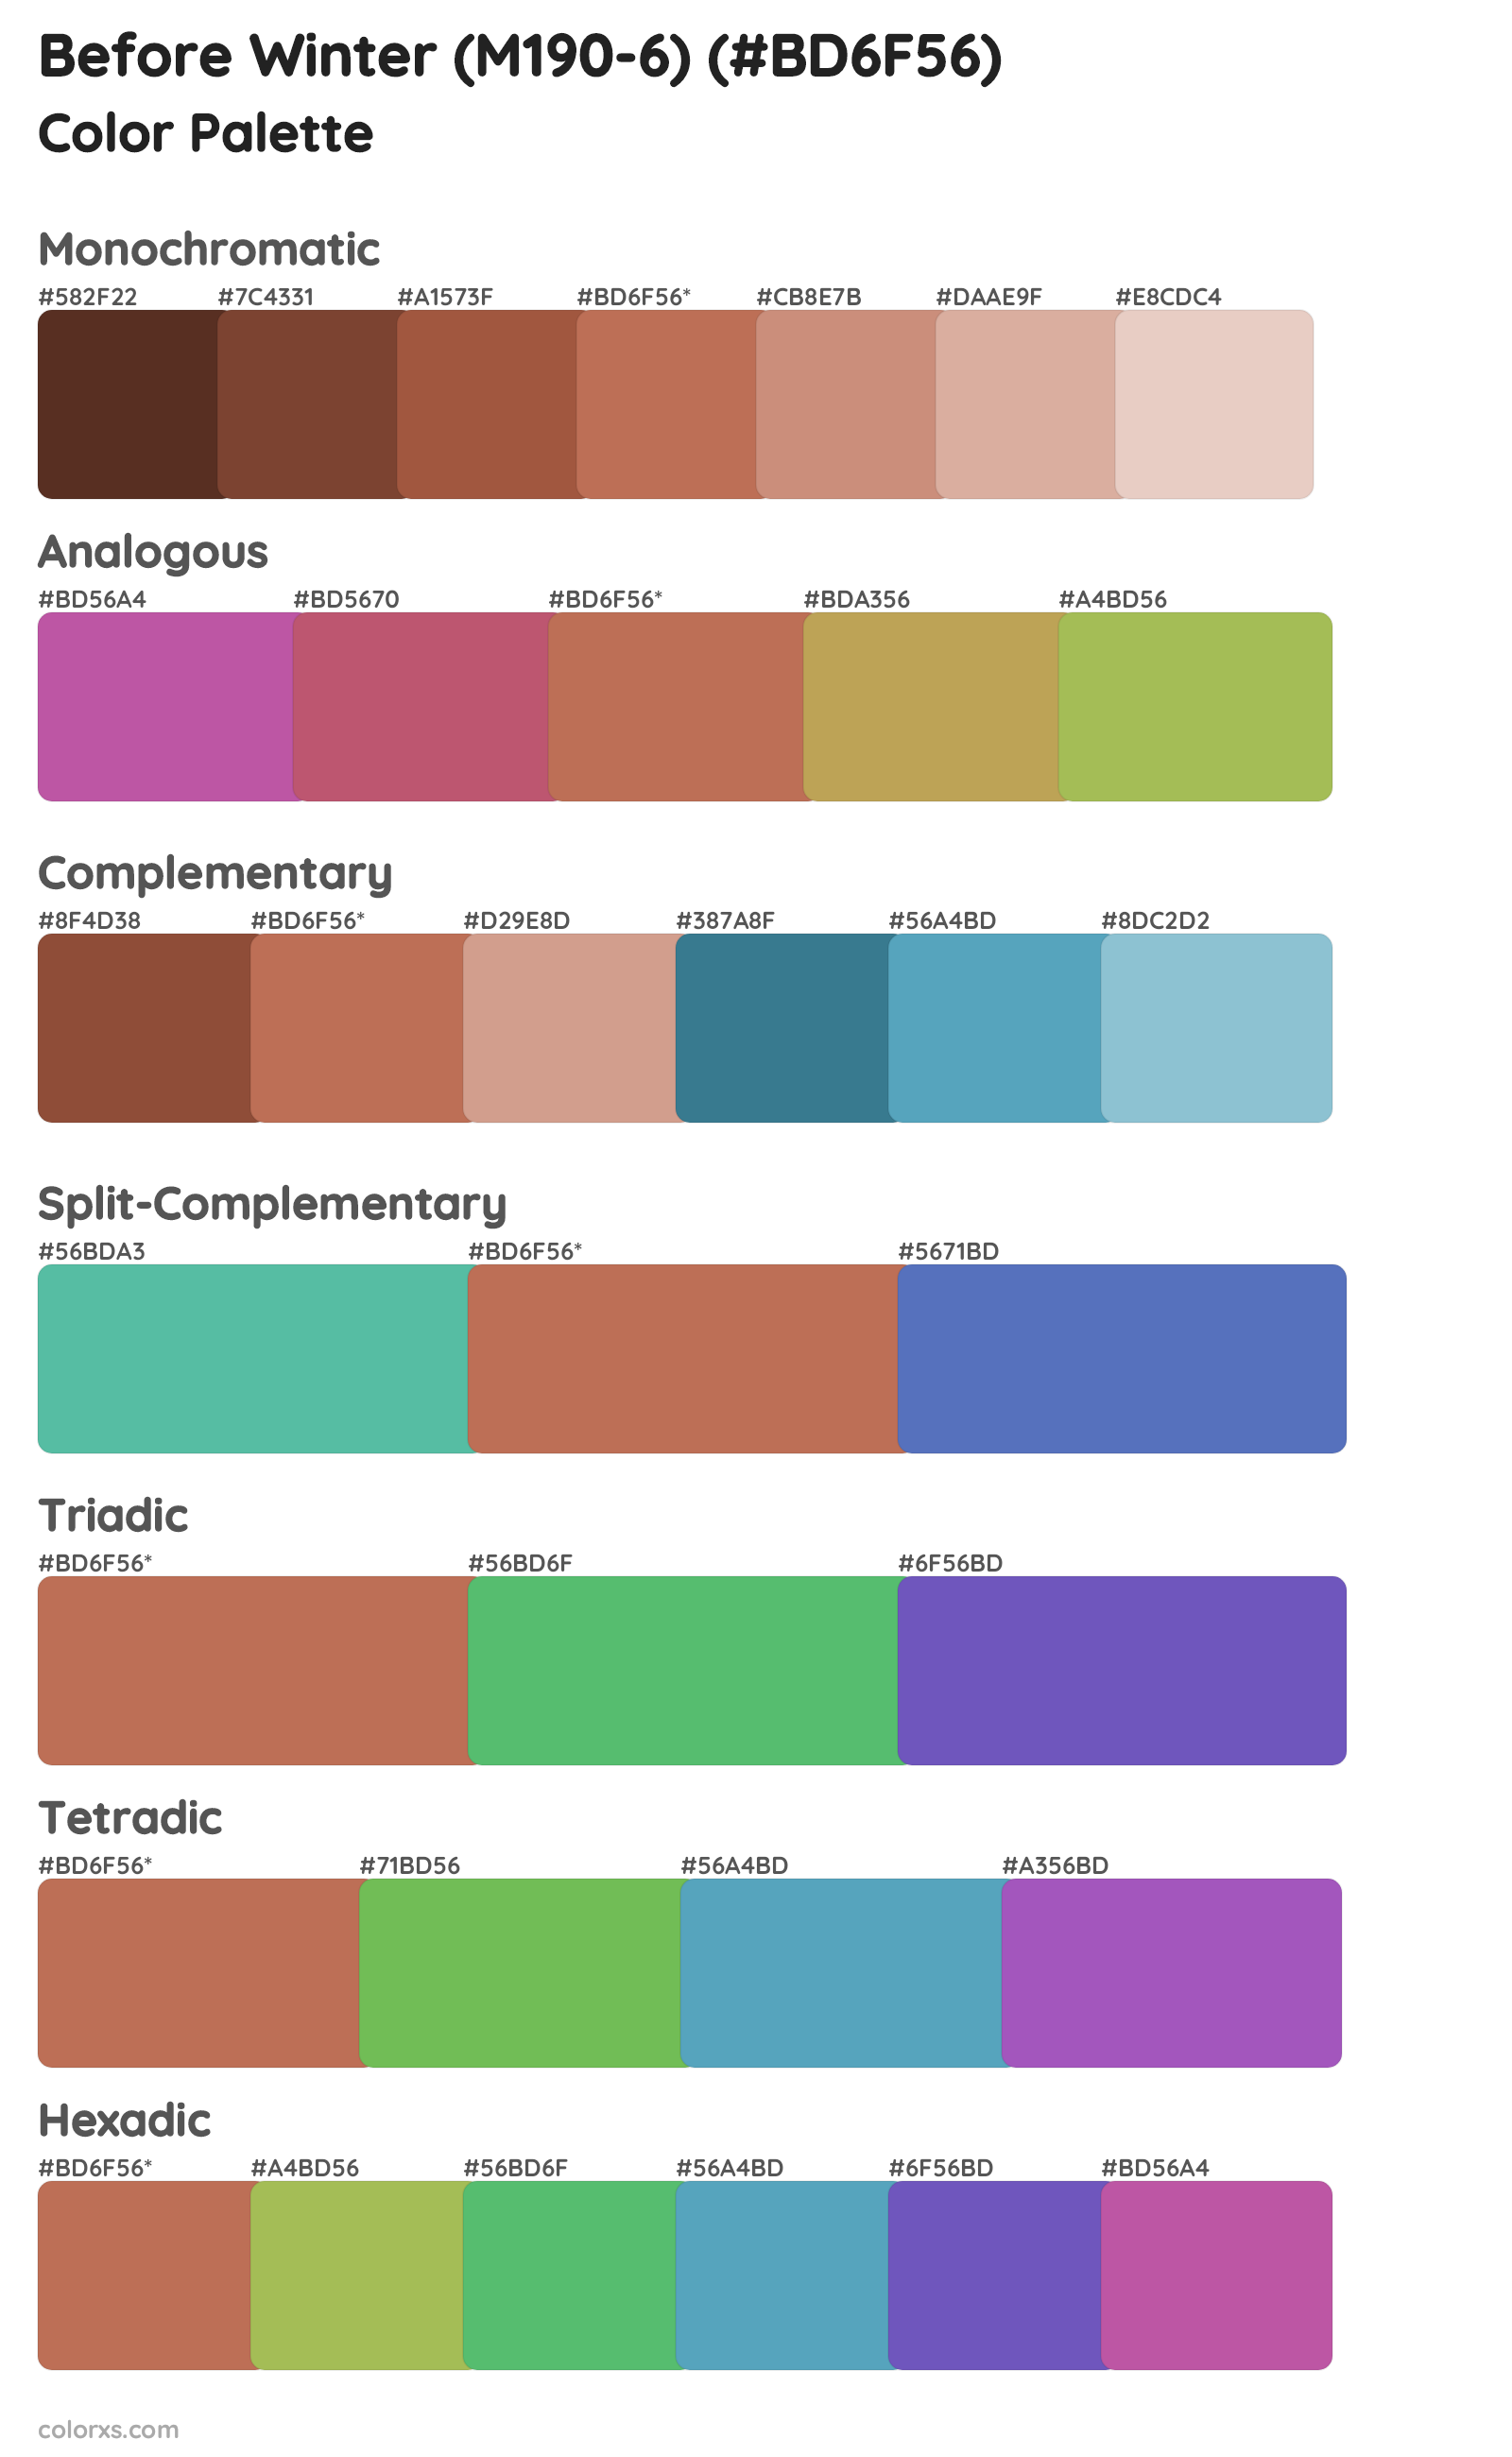 Before Winter (M190-6) Color Scheme Palettes